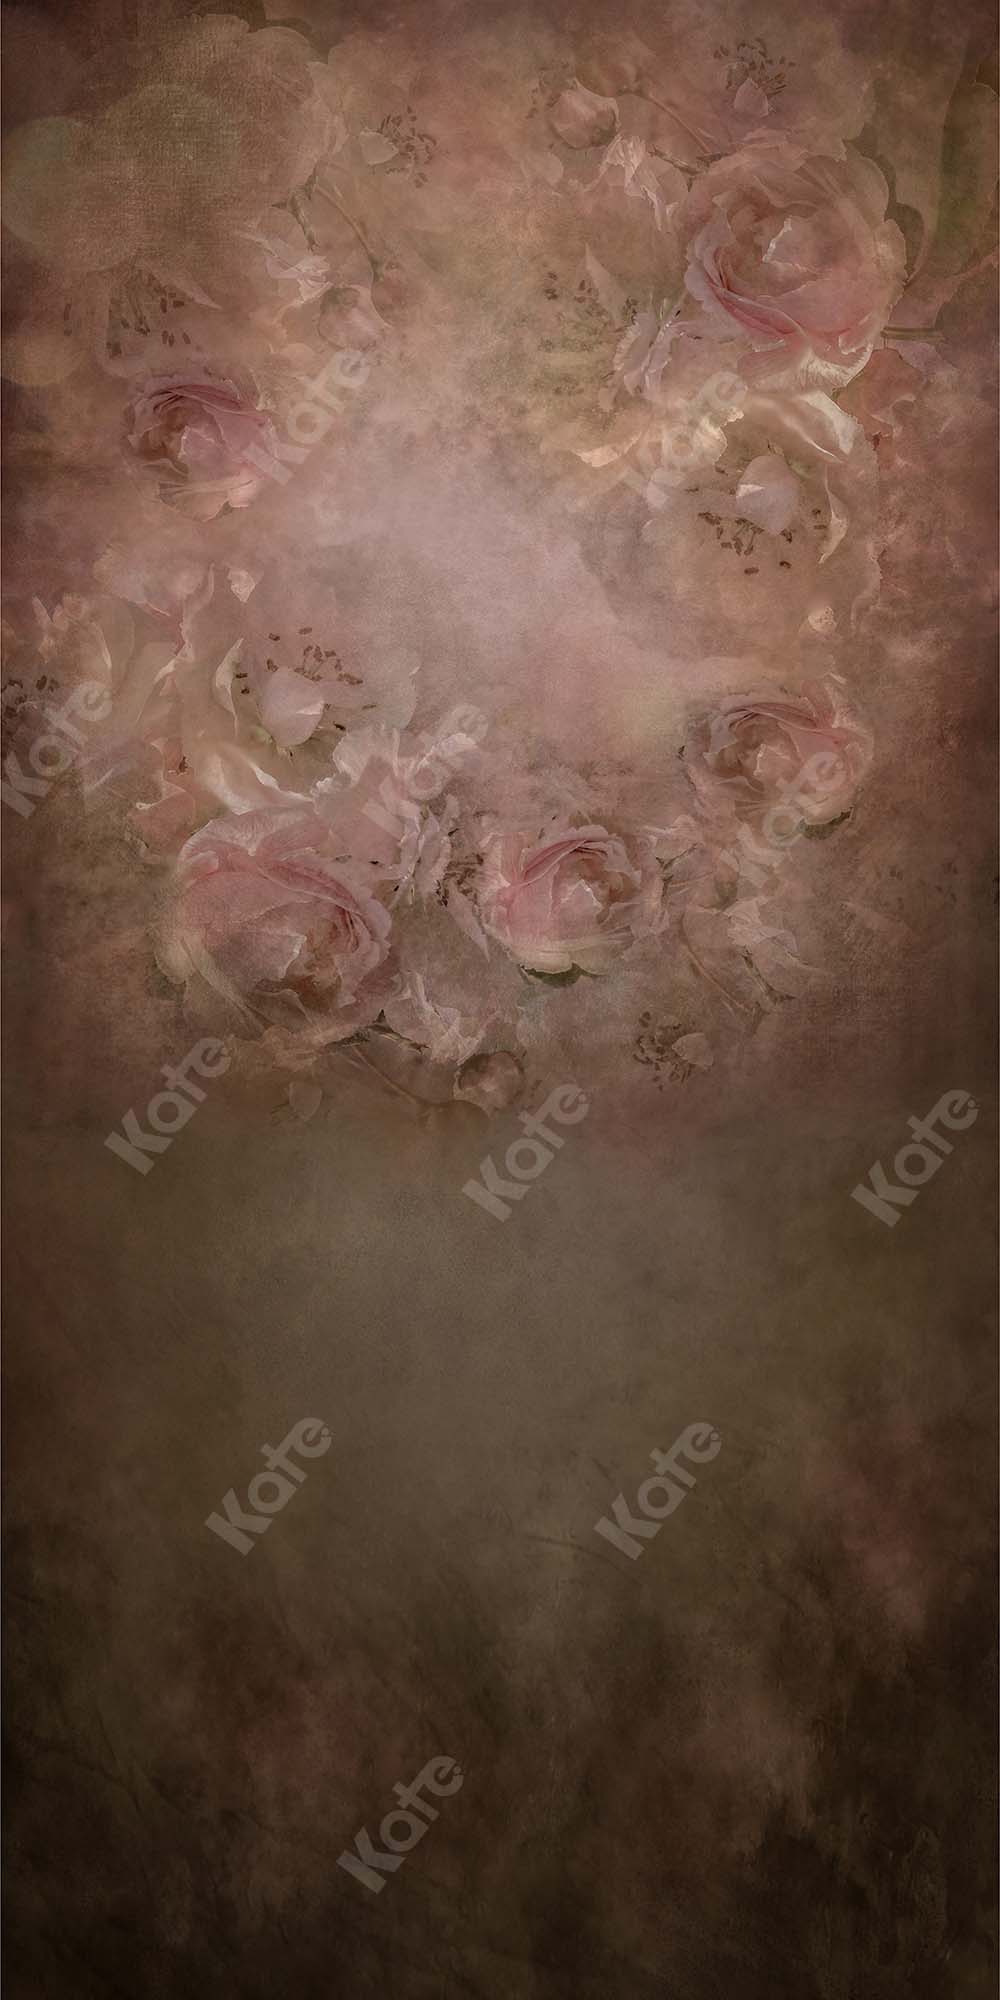 Kate Telón de fondo de rosas florales retro de bellas artes diseñado por Kate Image